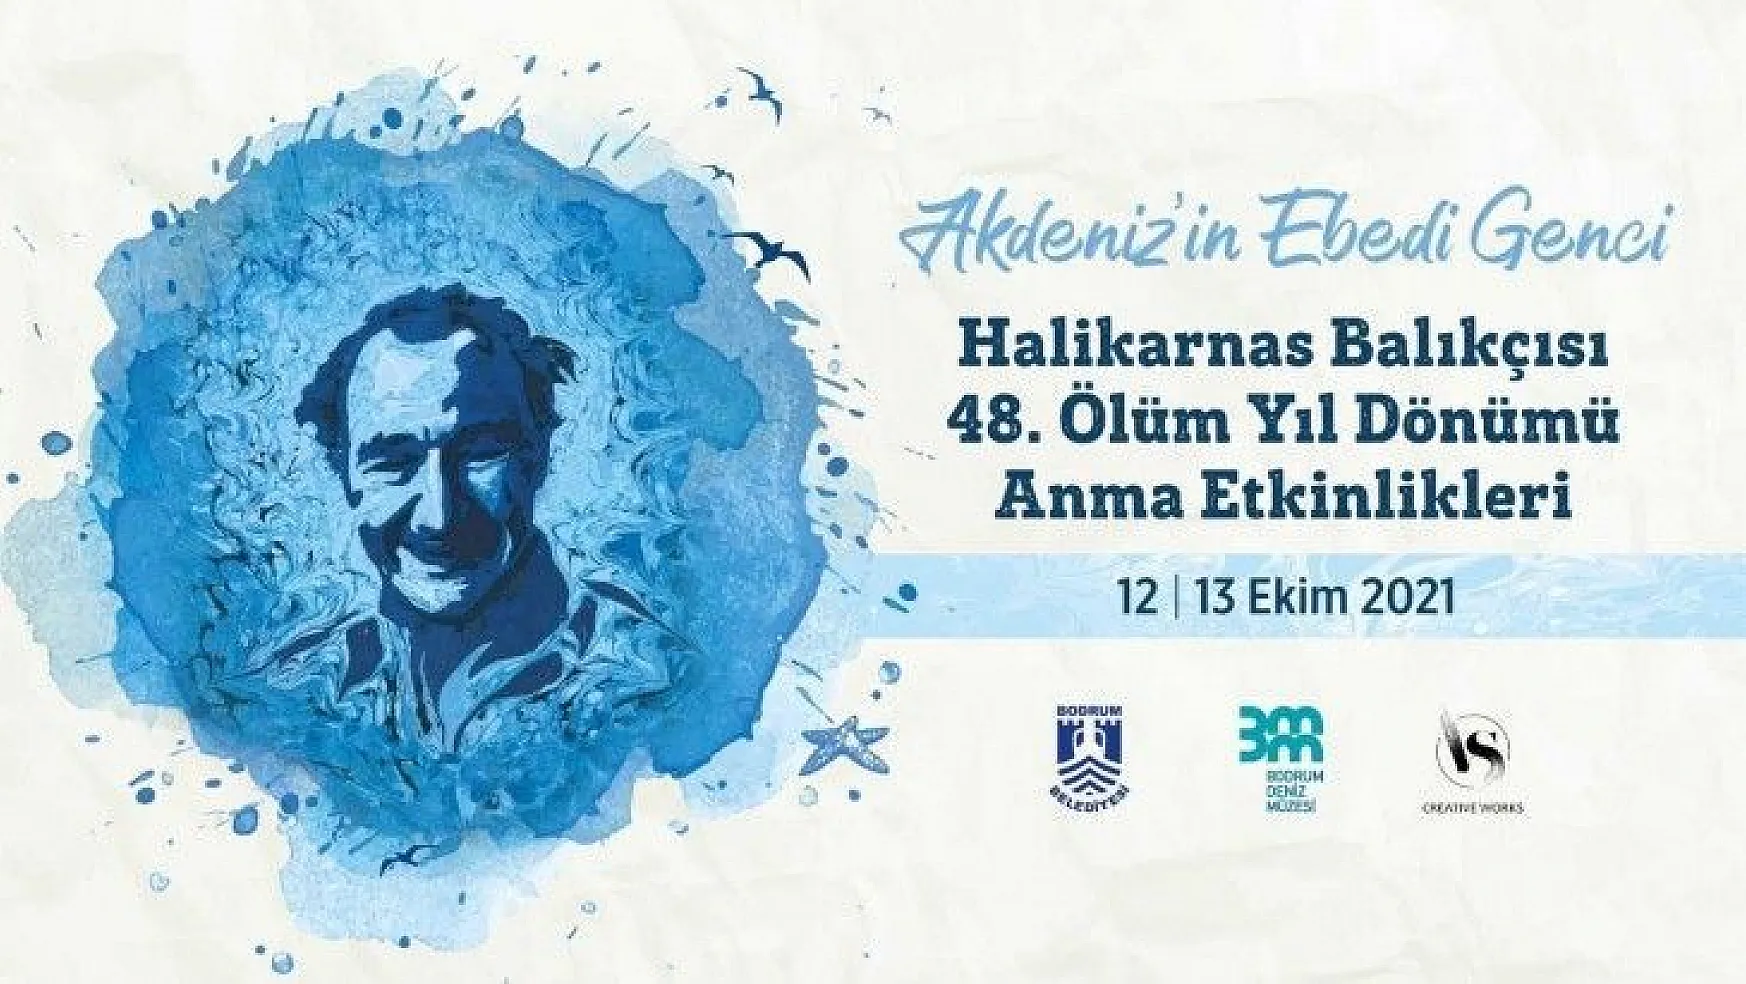 Halikarnas Balıkçısı Kabaağaçlı, 48. ölüm yıl dönümünde anılacak